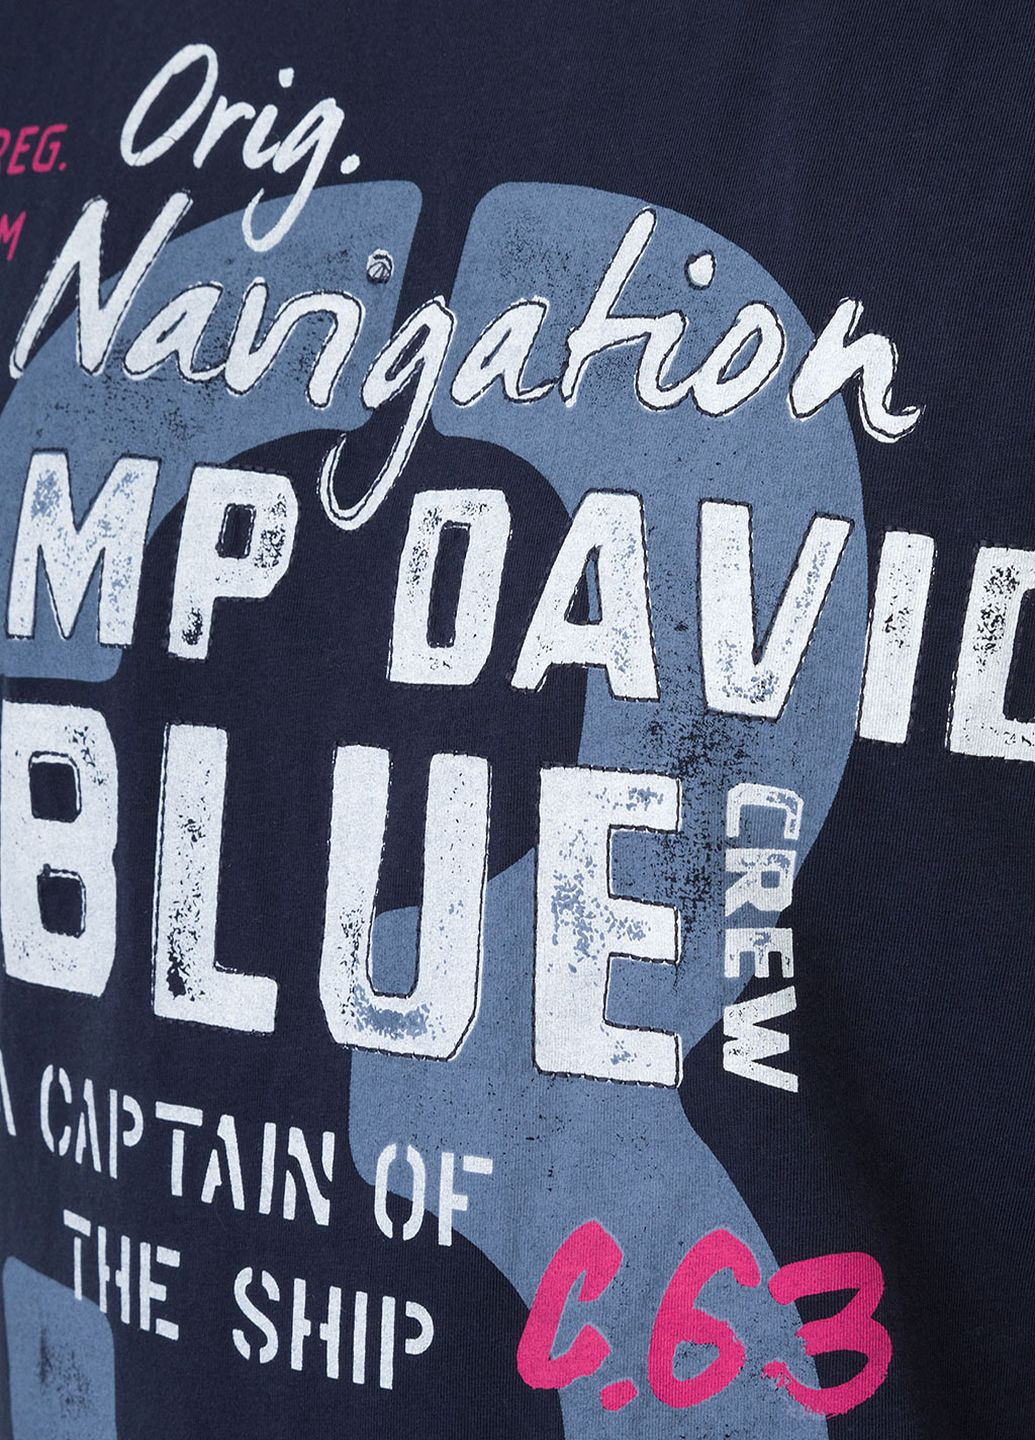 Синяя футболка Camp David